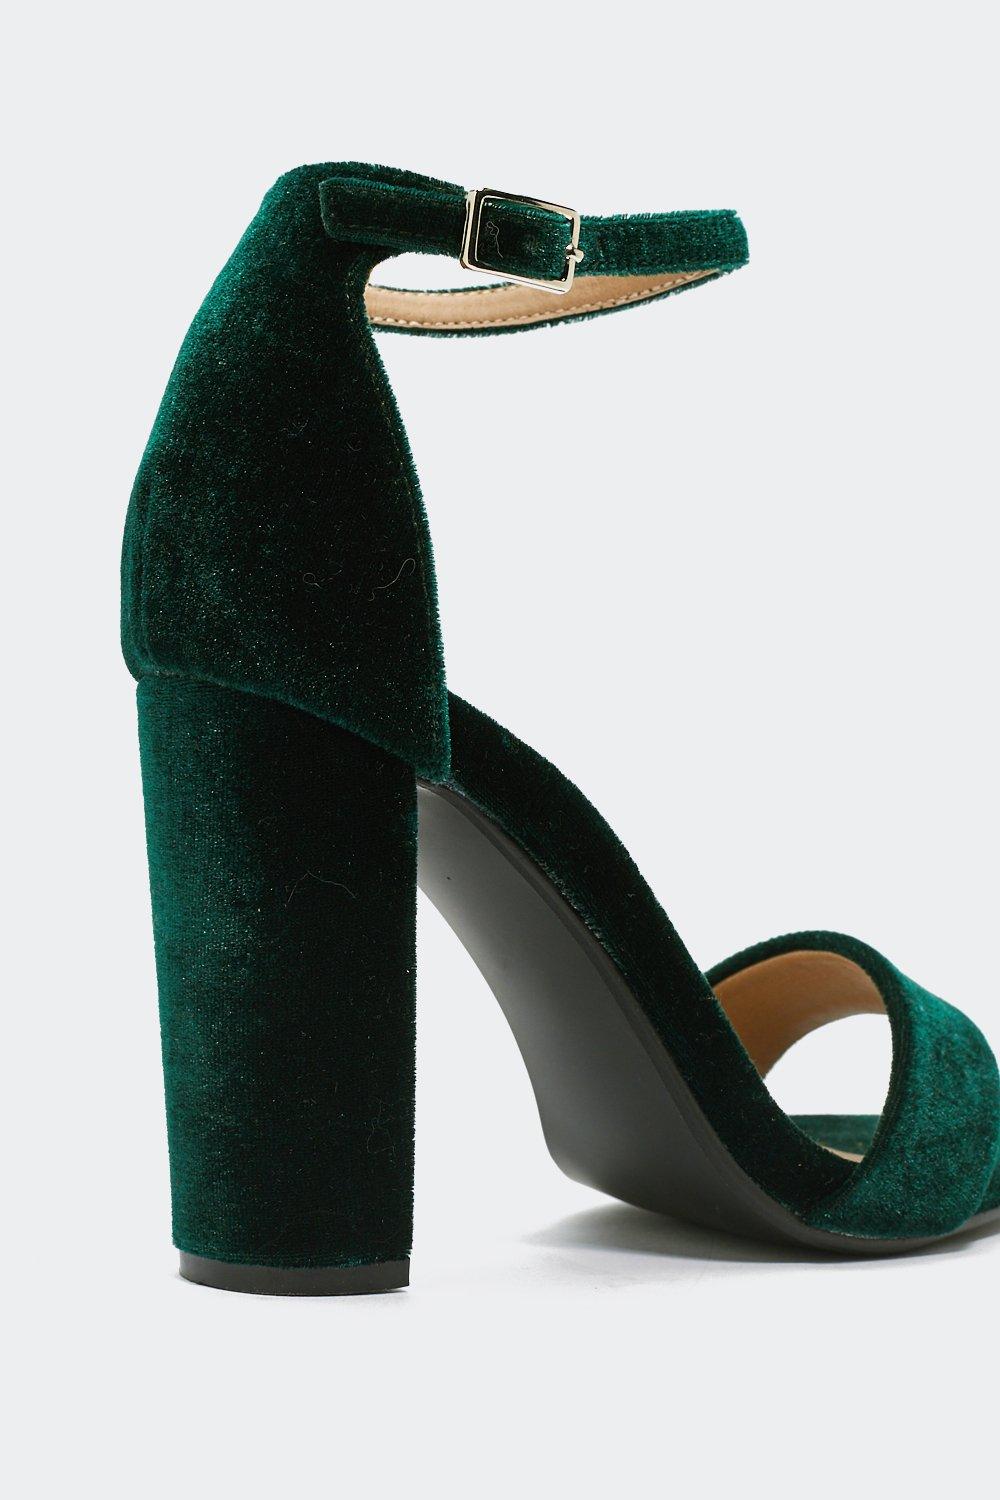 green velvet heels uk